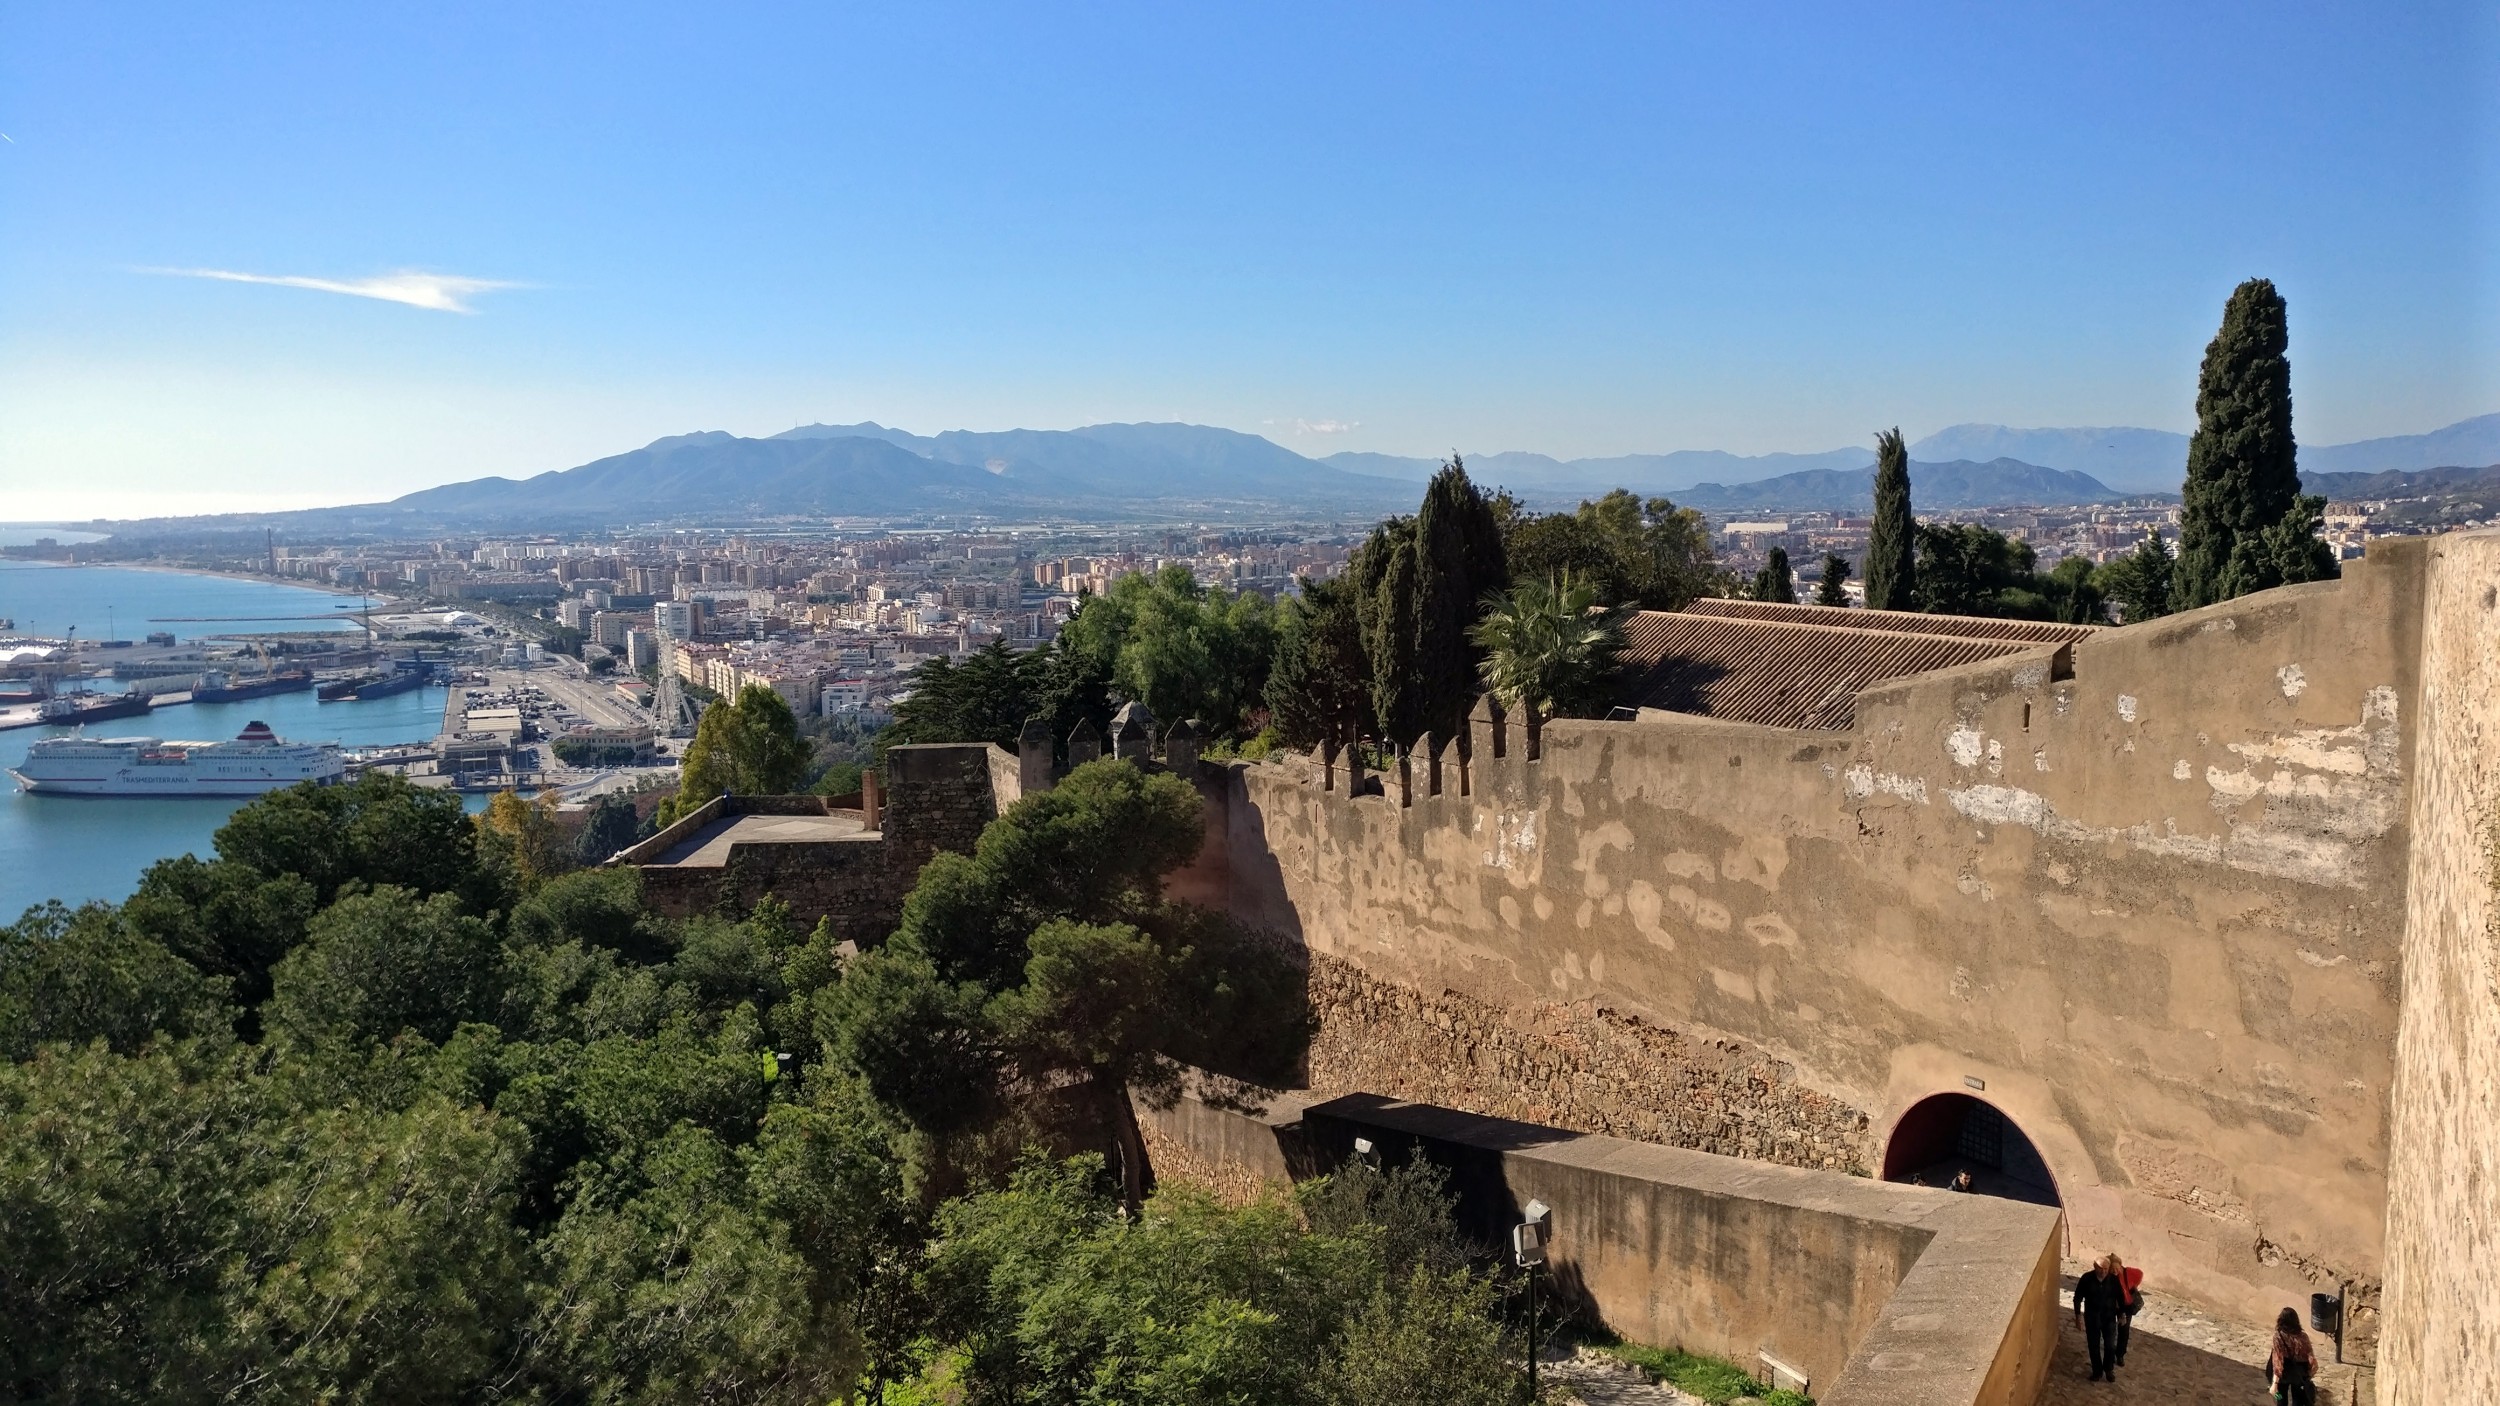 Castillo de Gibralfaro : Malaga | Visions of Travel